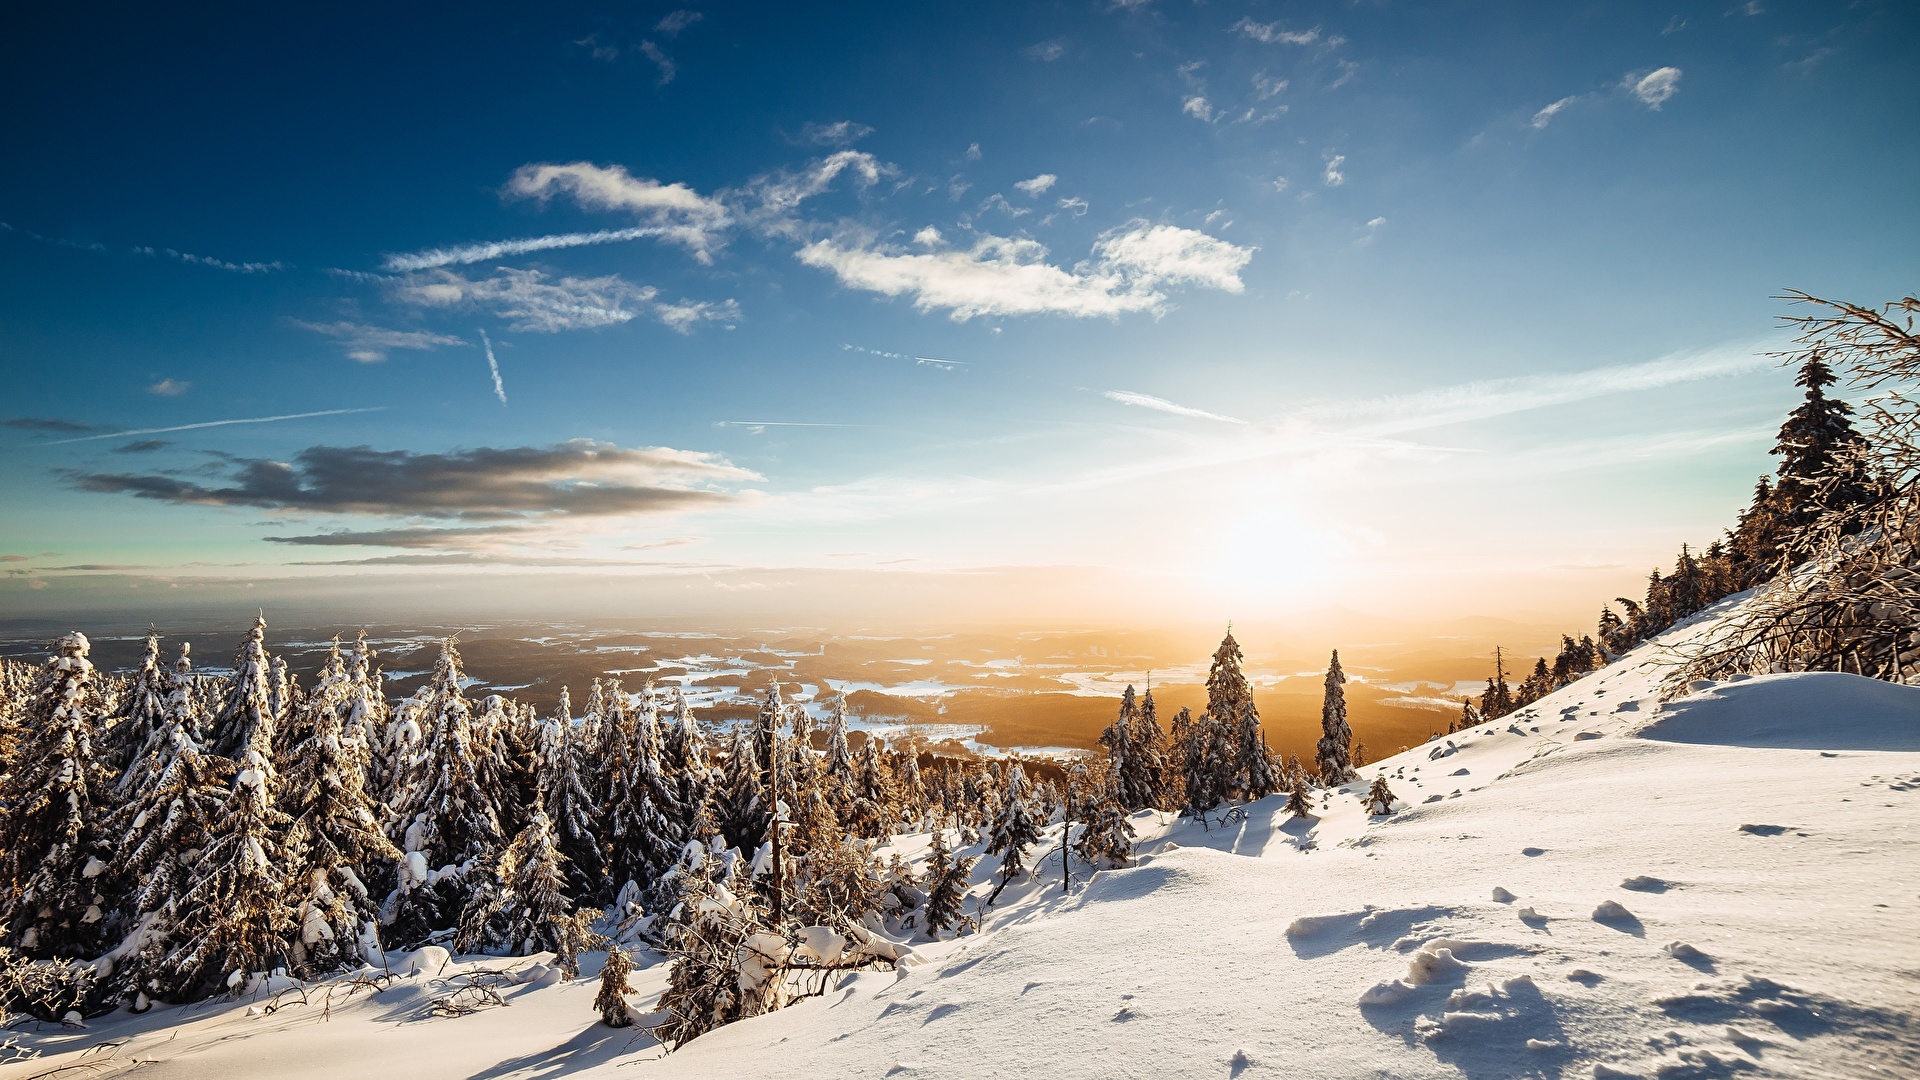 壁紙 19x1080 山 冬 風景写真 空 雪 木 太陽 トウヒ属 自然 ダウンロード 写真